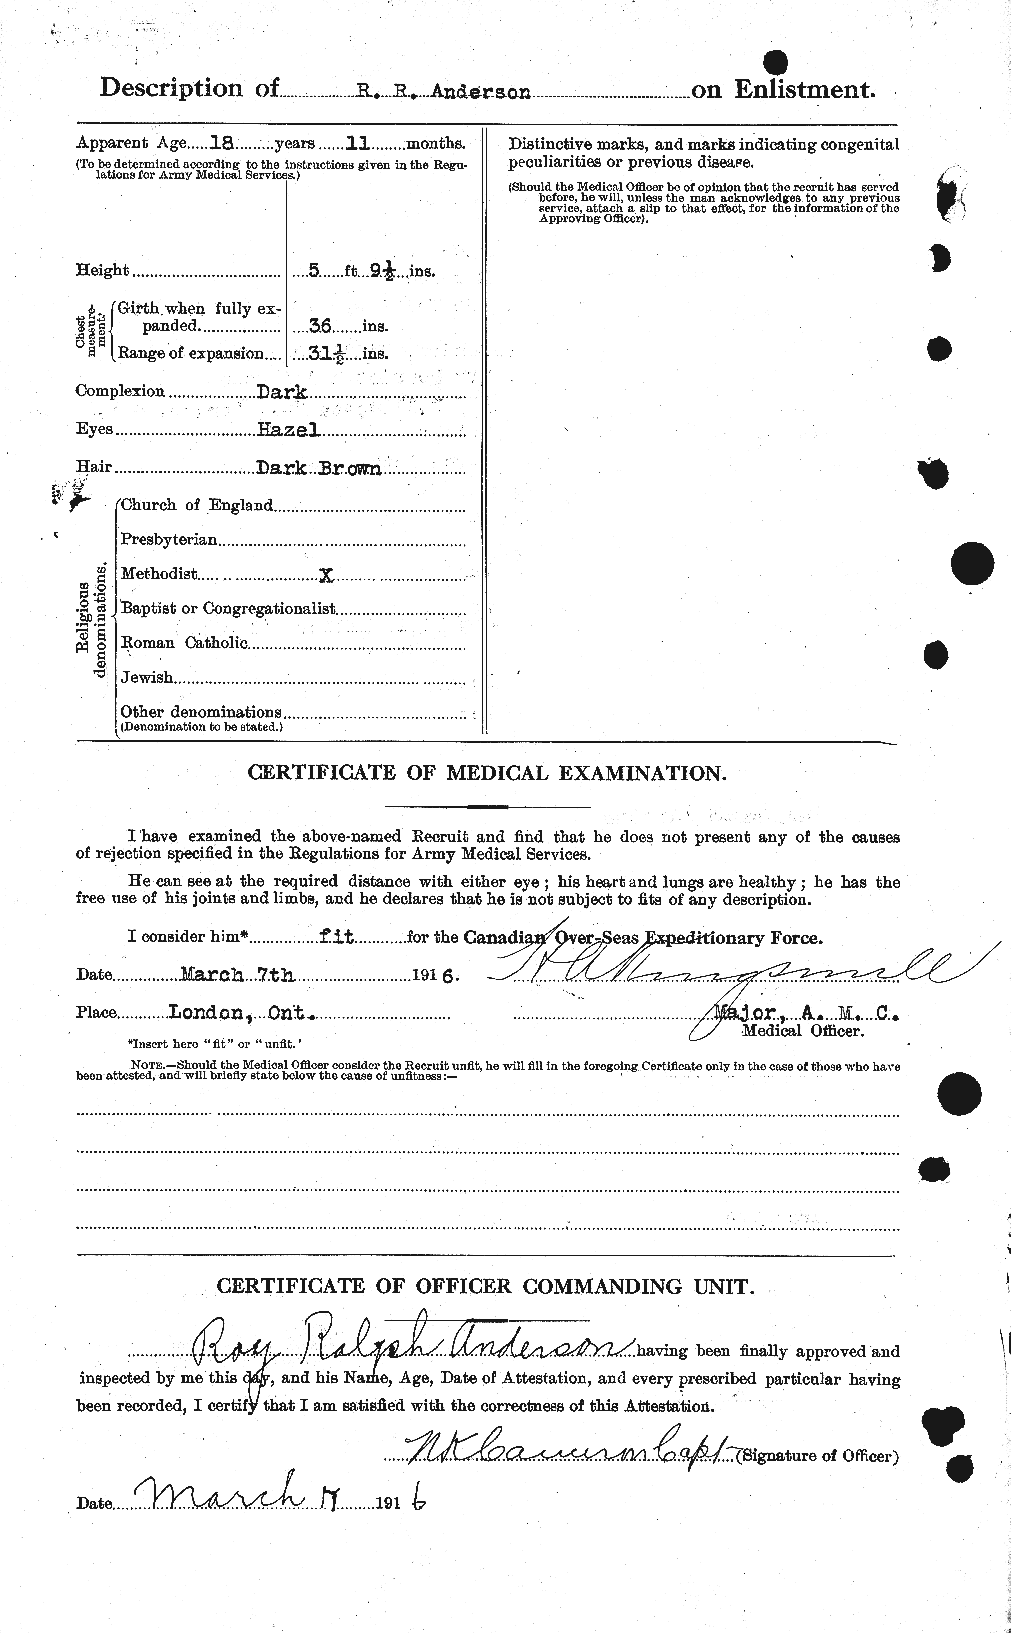 Dossiers du Personnel de la Première Guerre mondiale - CEC 207191b